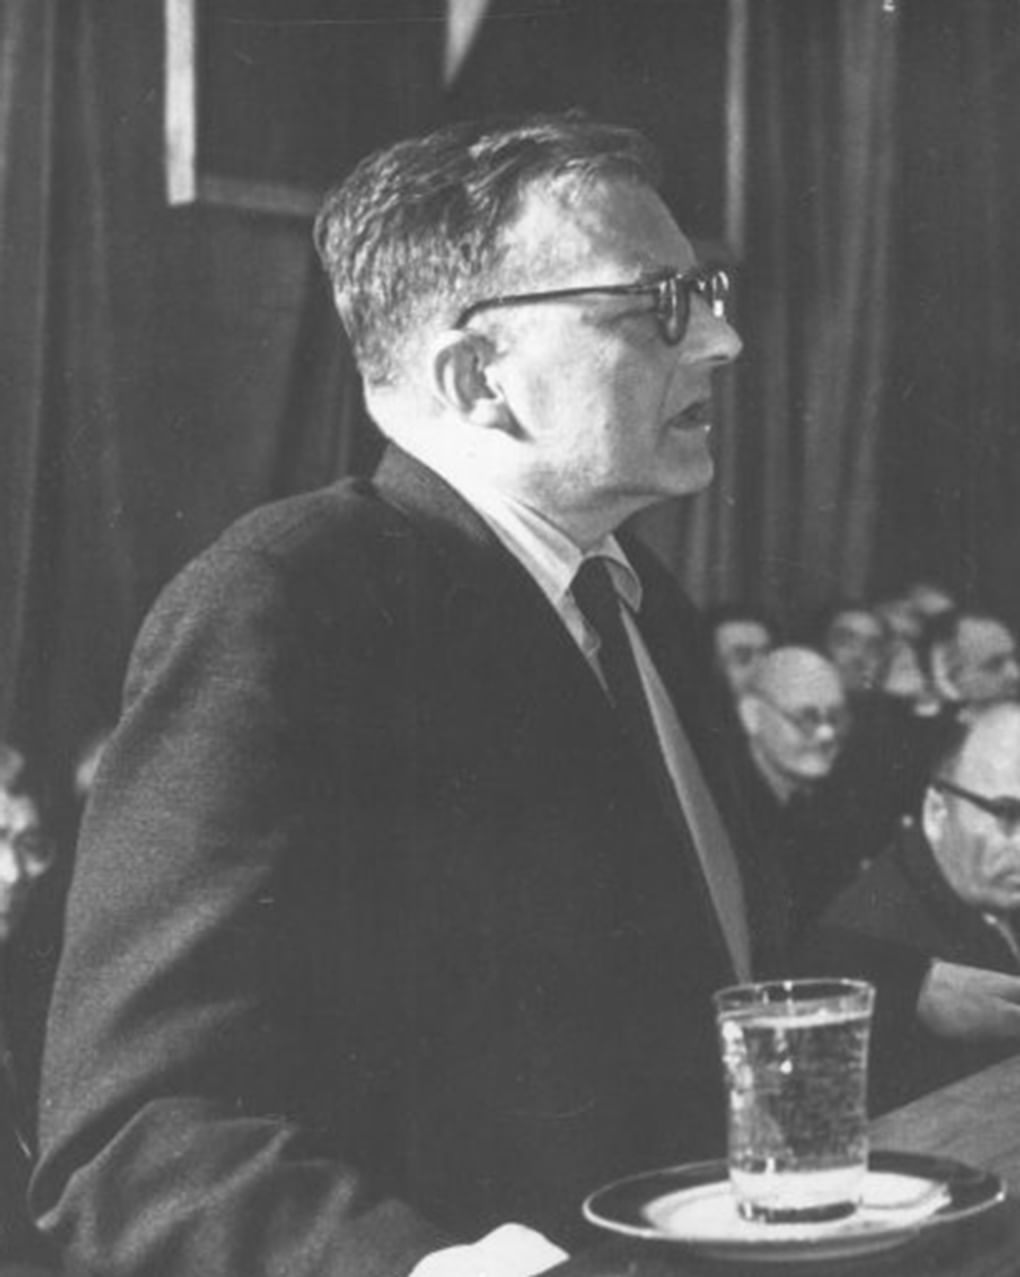 Композитор Дмитрий Шостакович выступает на III Всесоюзном съезде композиторов. 1962 год. Российский национальный музей музыки, Москва